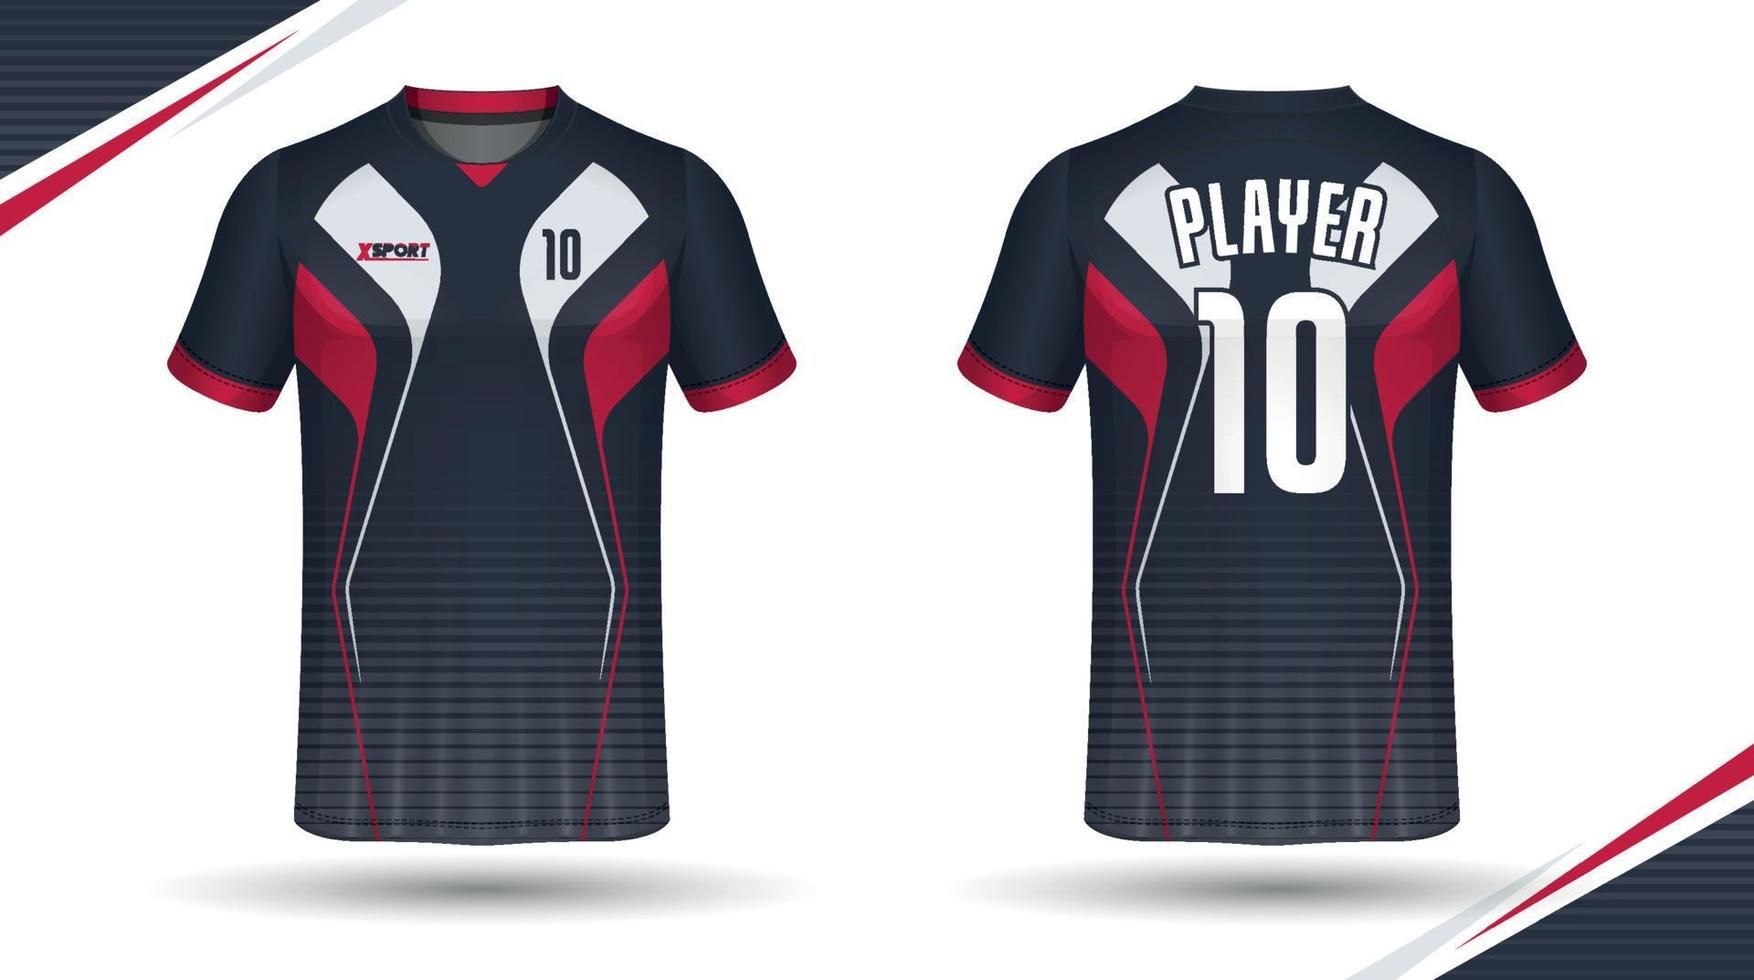 diseño de camisetas de fútbol para sublimación, diseño de camisetas deportivas vector